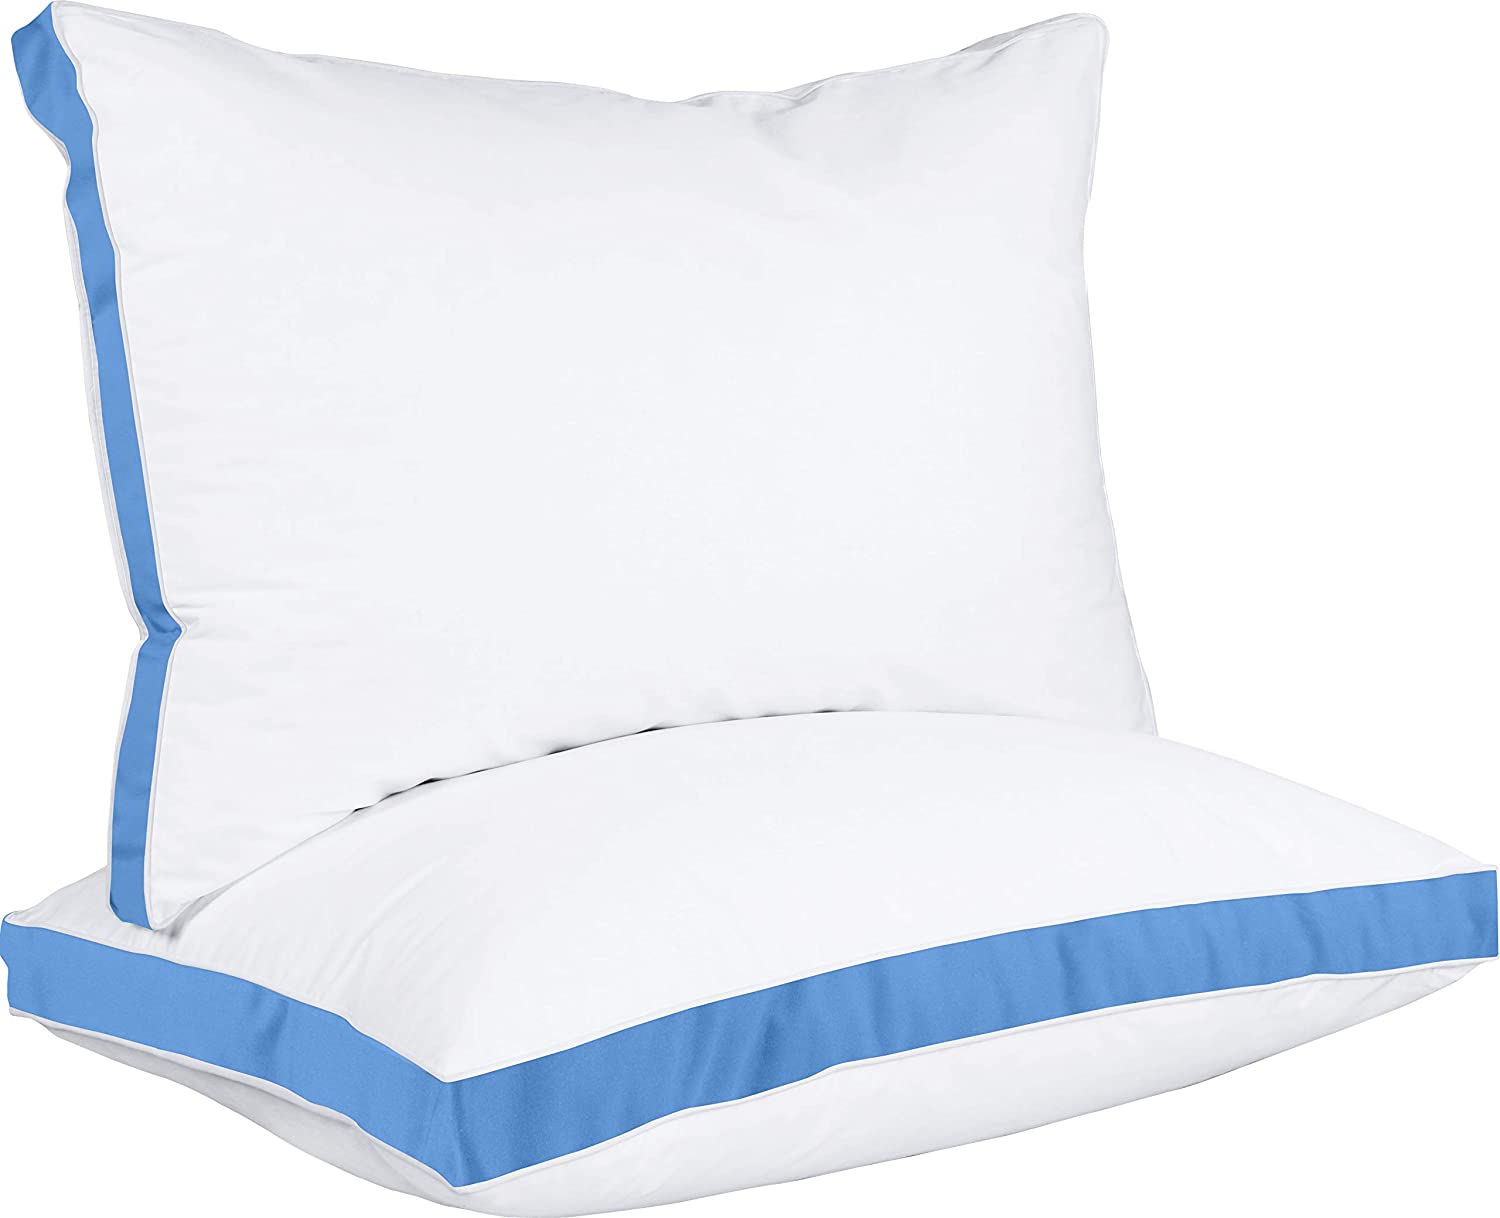 Utopia Bedding Throw Pillows (Set of 4, White), 20 x 20 Inches Pillows for  Sofa